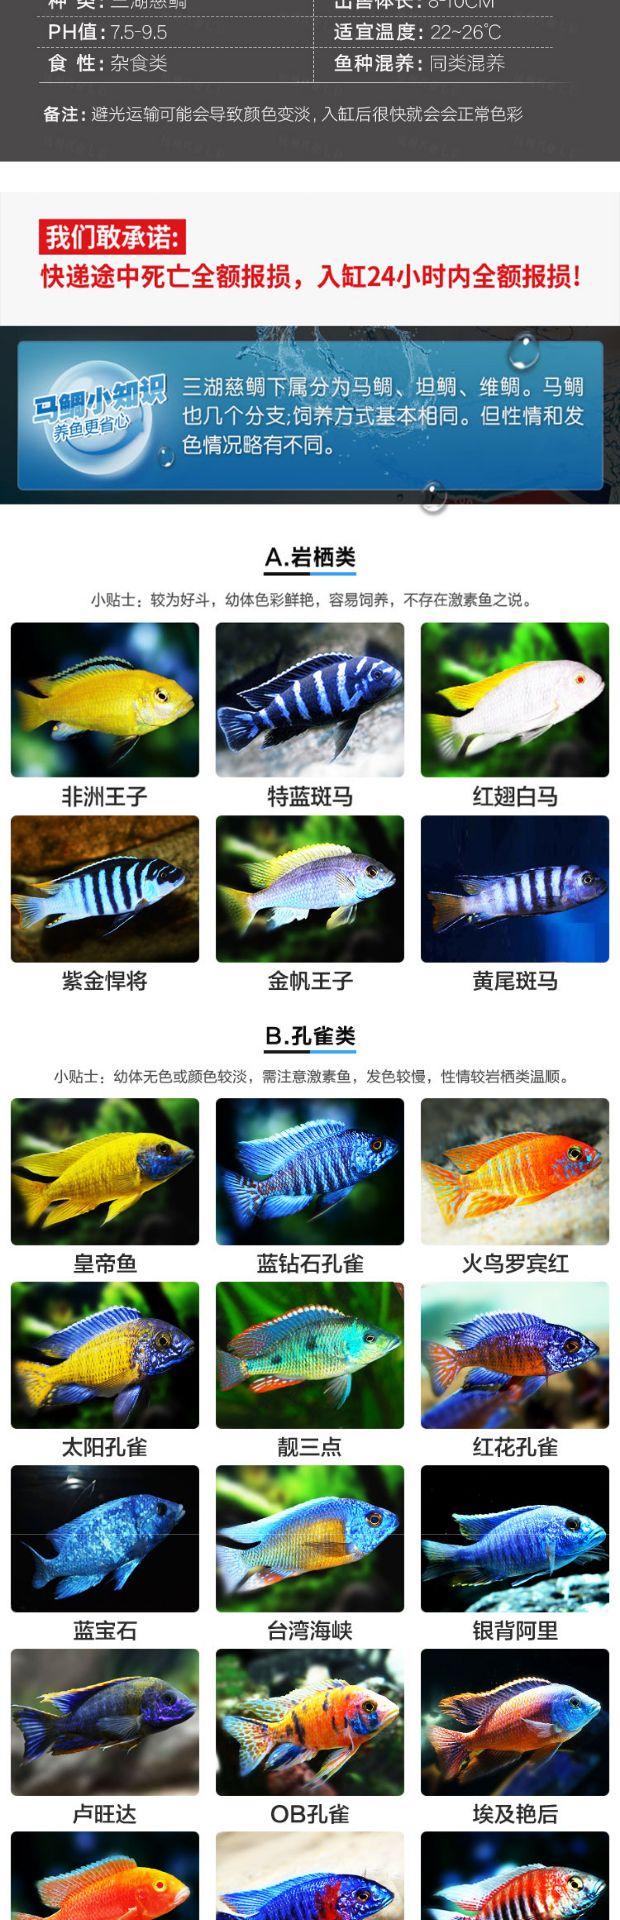 马鲷鱼品种介绍【图】图片